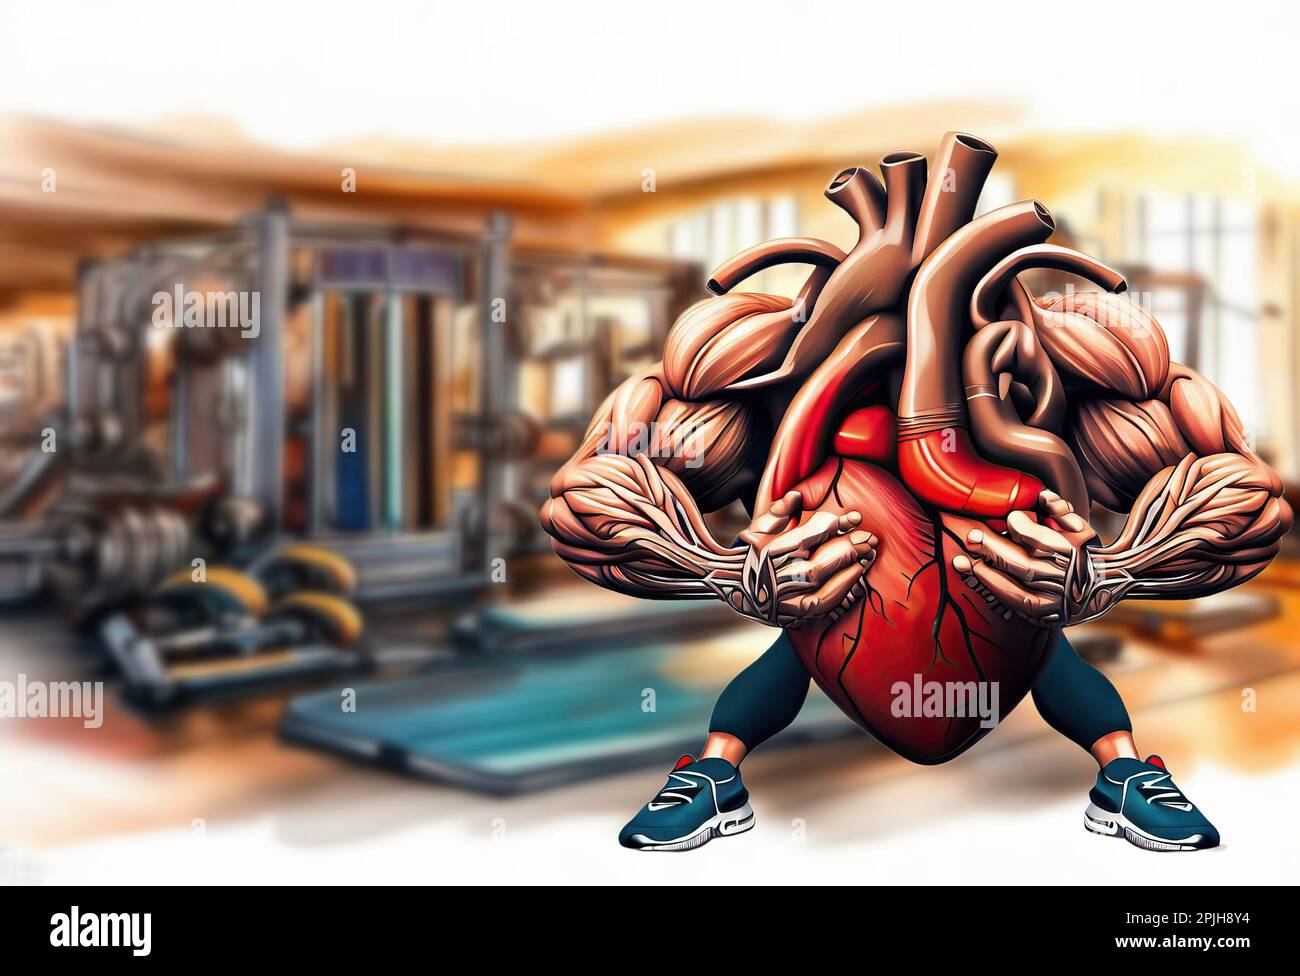 Trainiere dein Herz, ein konzeptionelles Bild, das zeigt, wie viel Gymnastik gut für das Herz ist Stockfoto